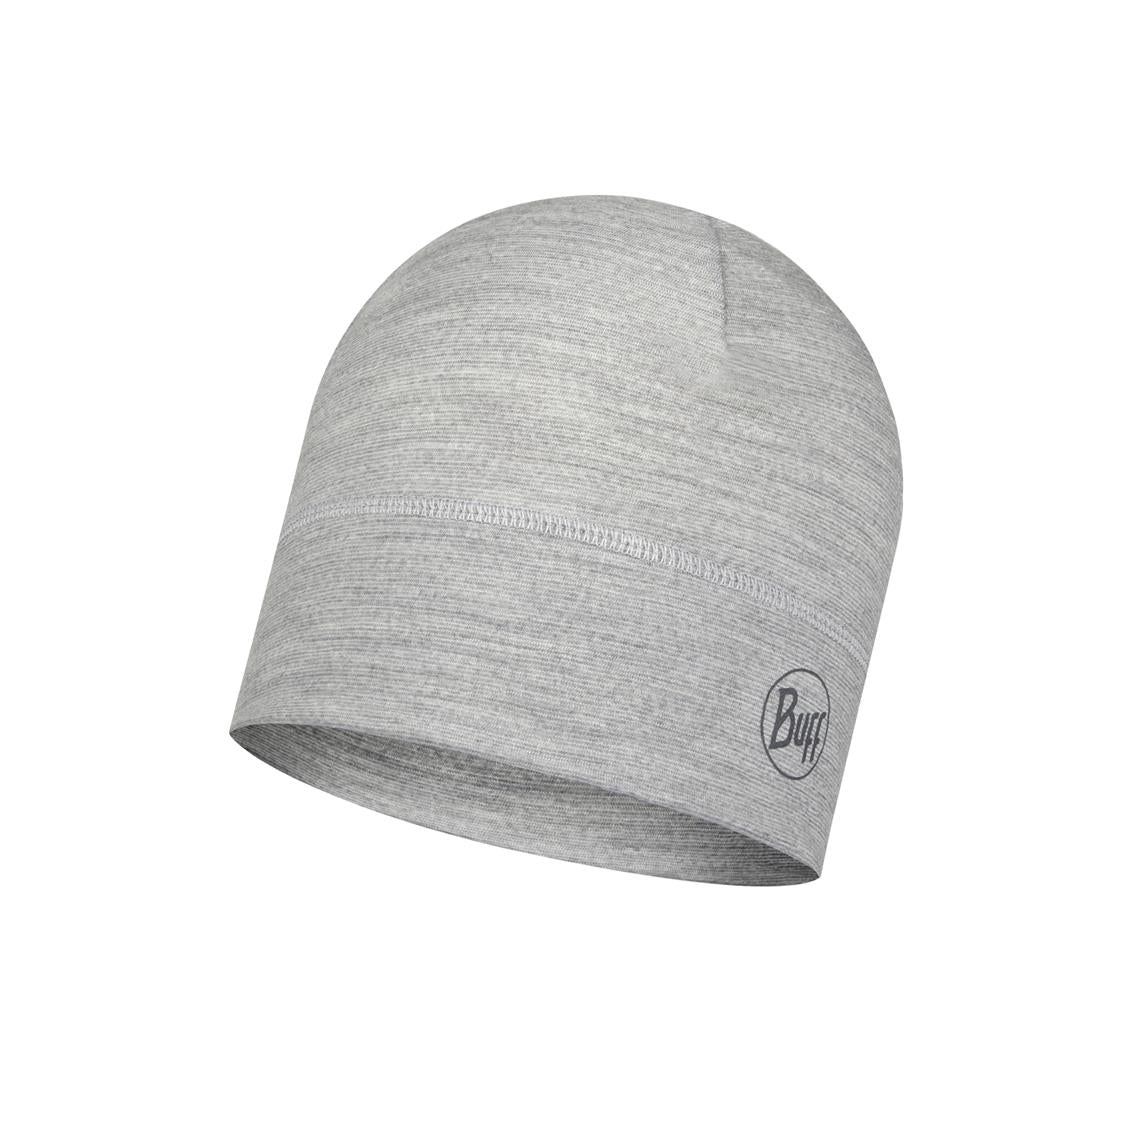 Hat Wool LW Ligh Grey -117997.954.10.00